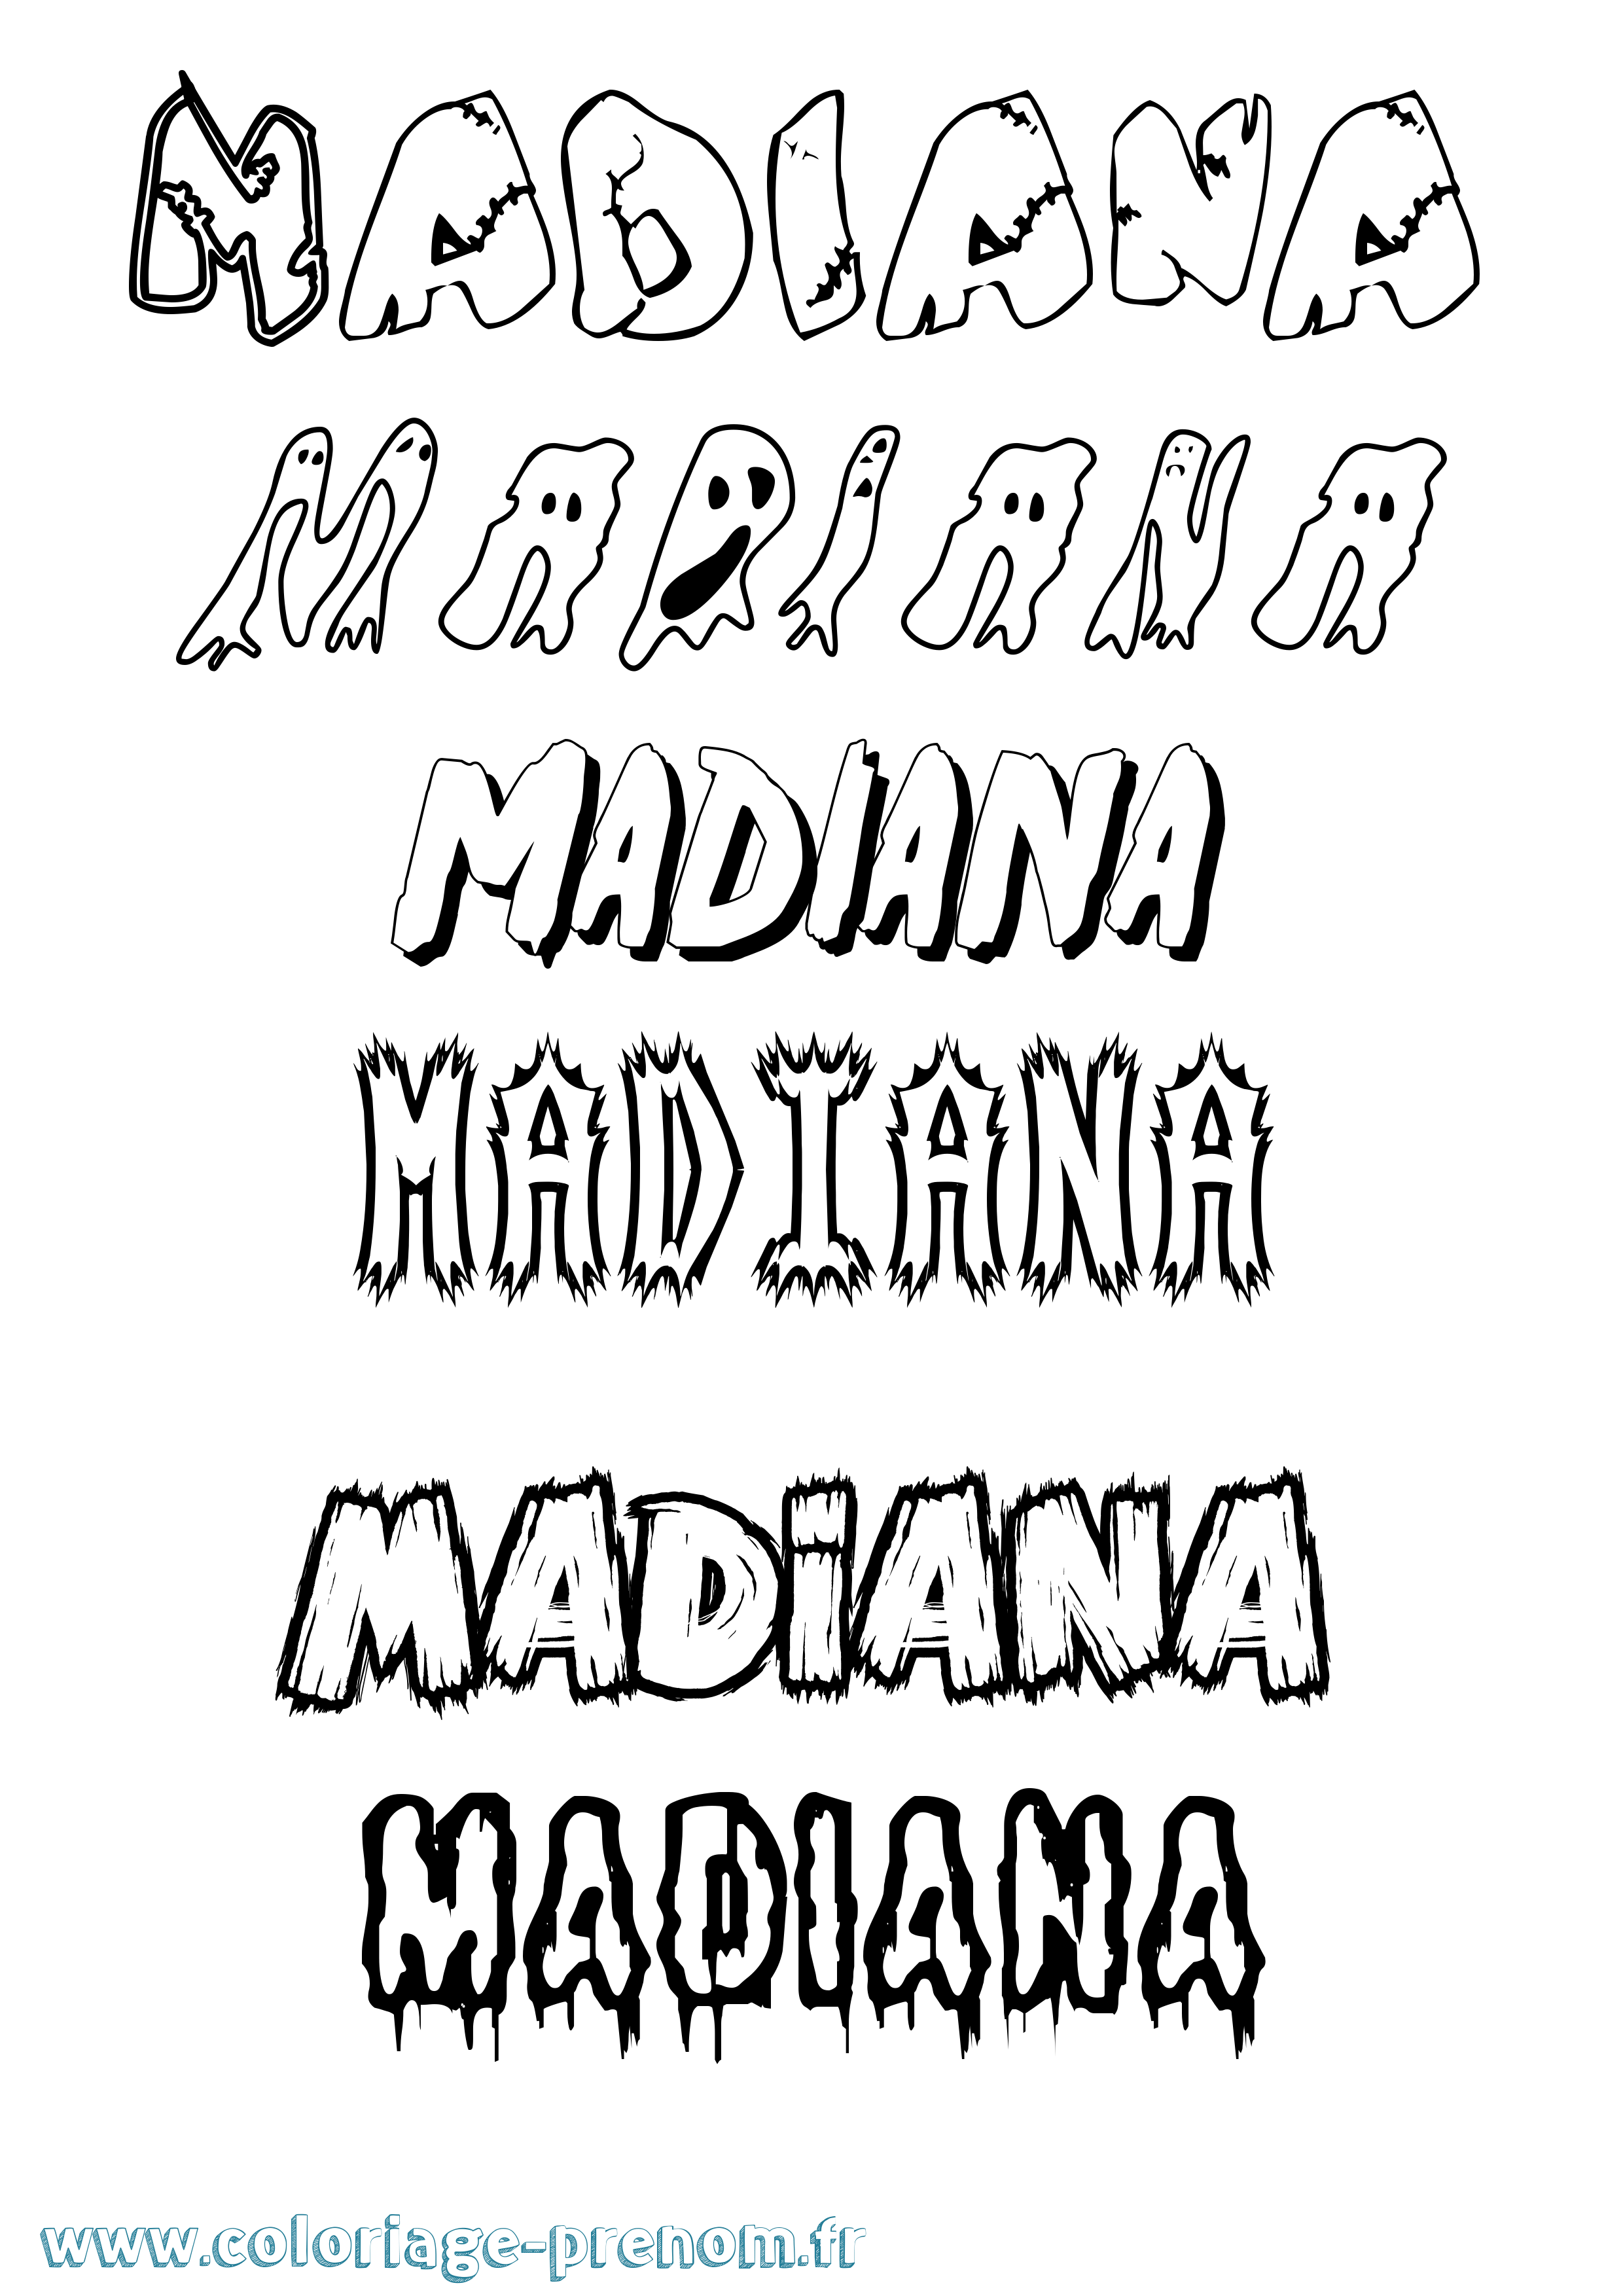 Coloriage prénom Madiana Frisson